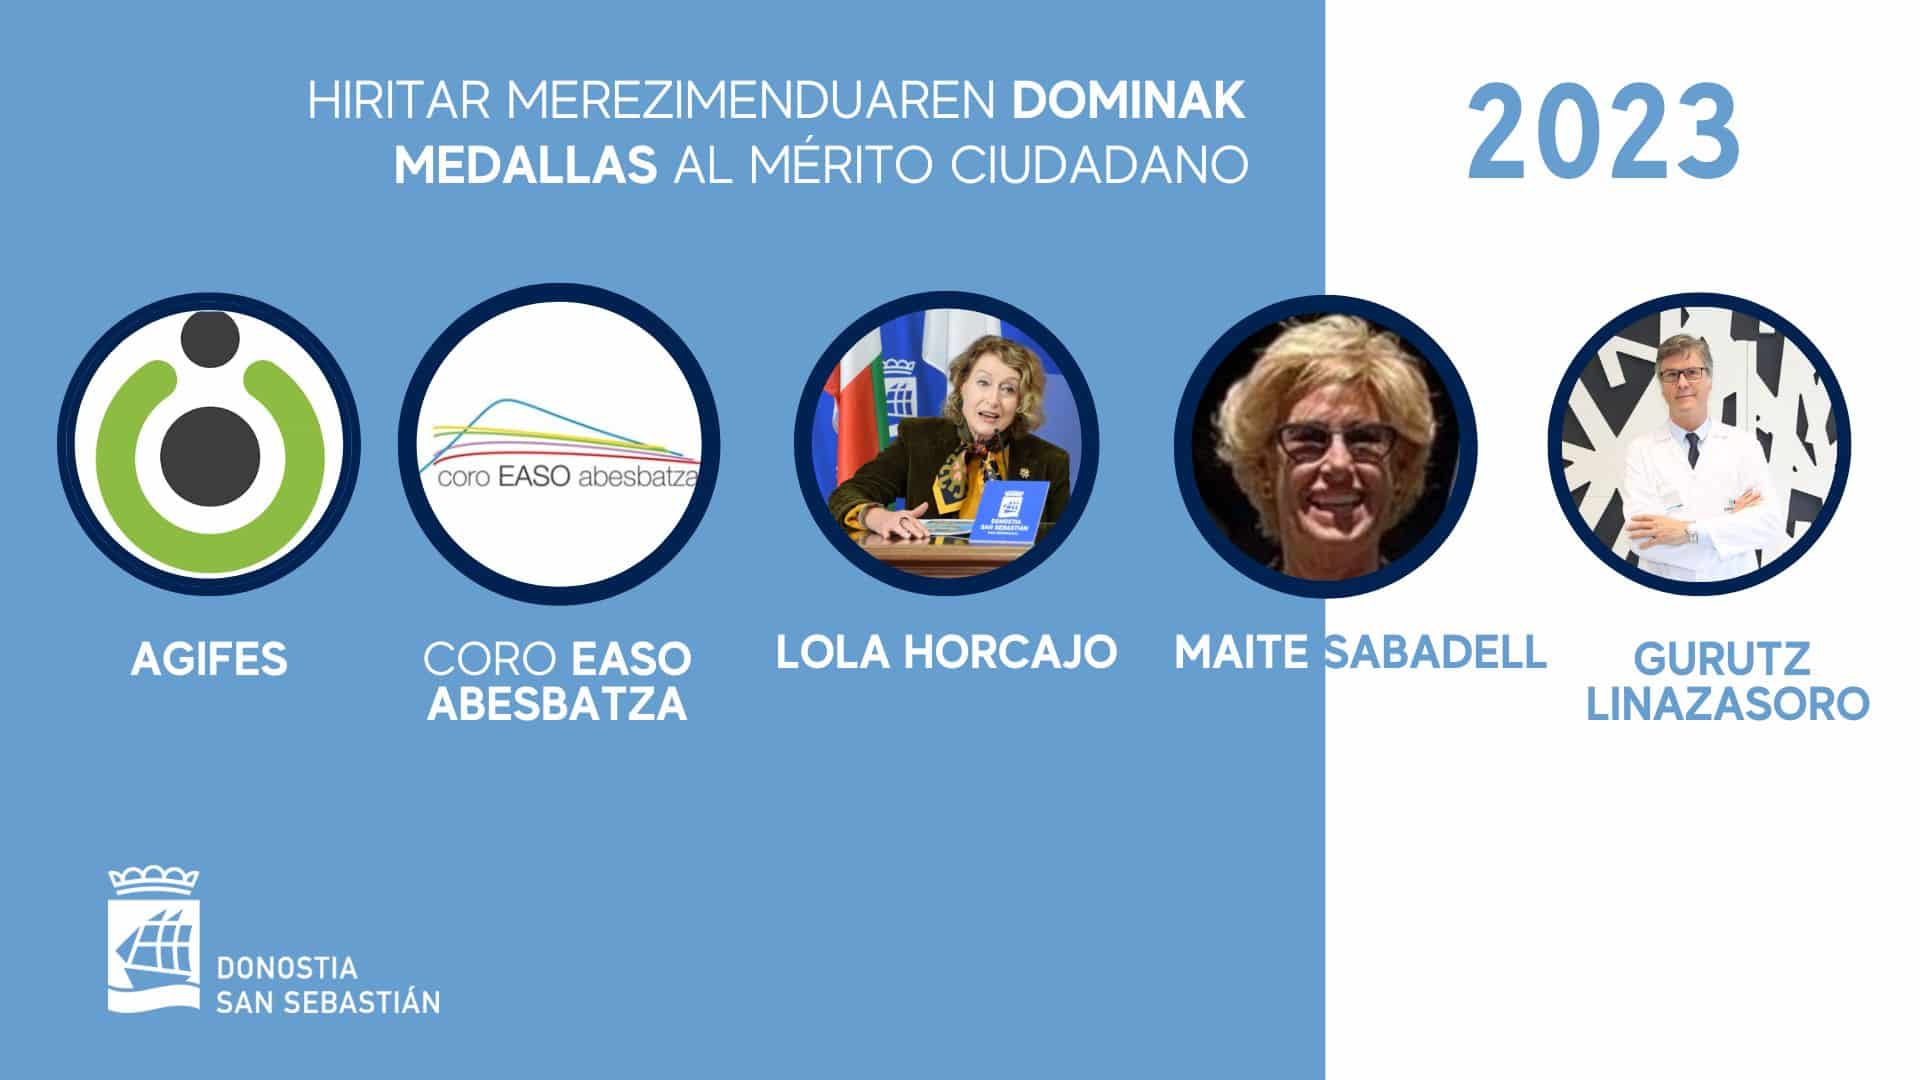 Medallas - Medallas al mérito ciudadano para AGIFES, Coro Easo, Lola Horcajo, Maite Sabadell y Gurutz Linazasoro